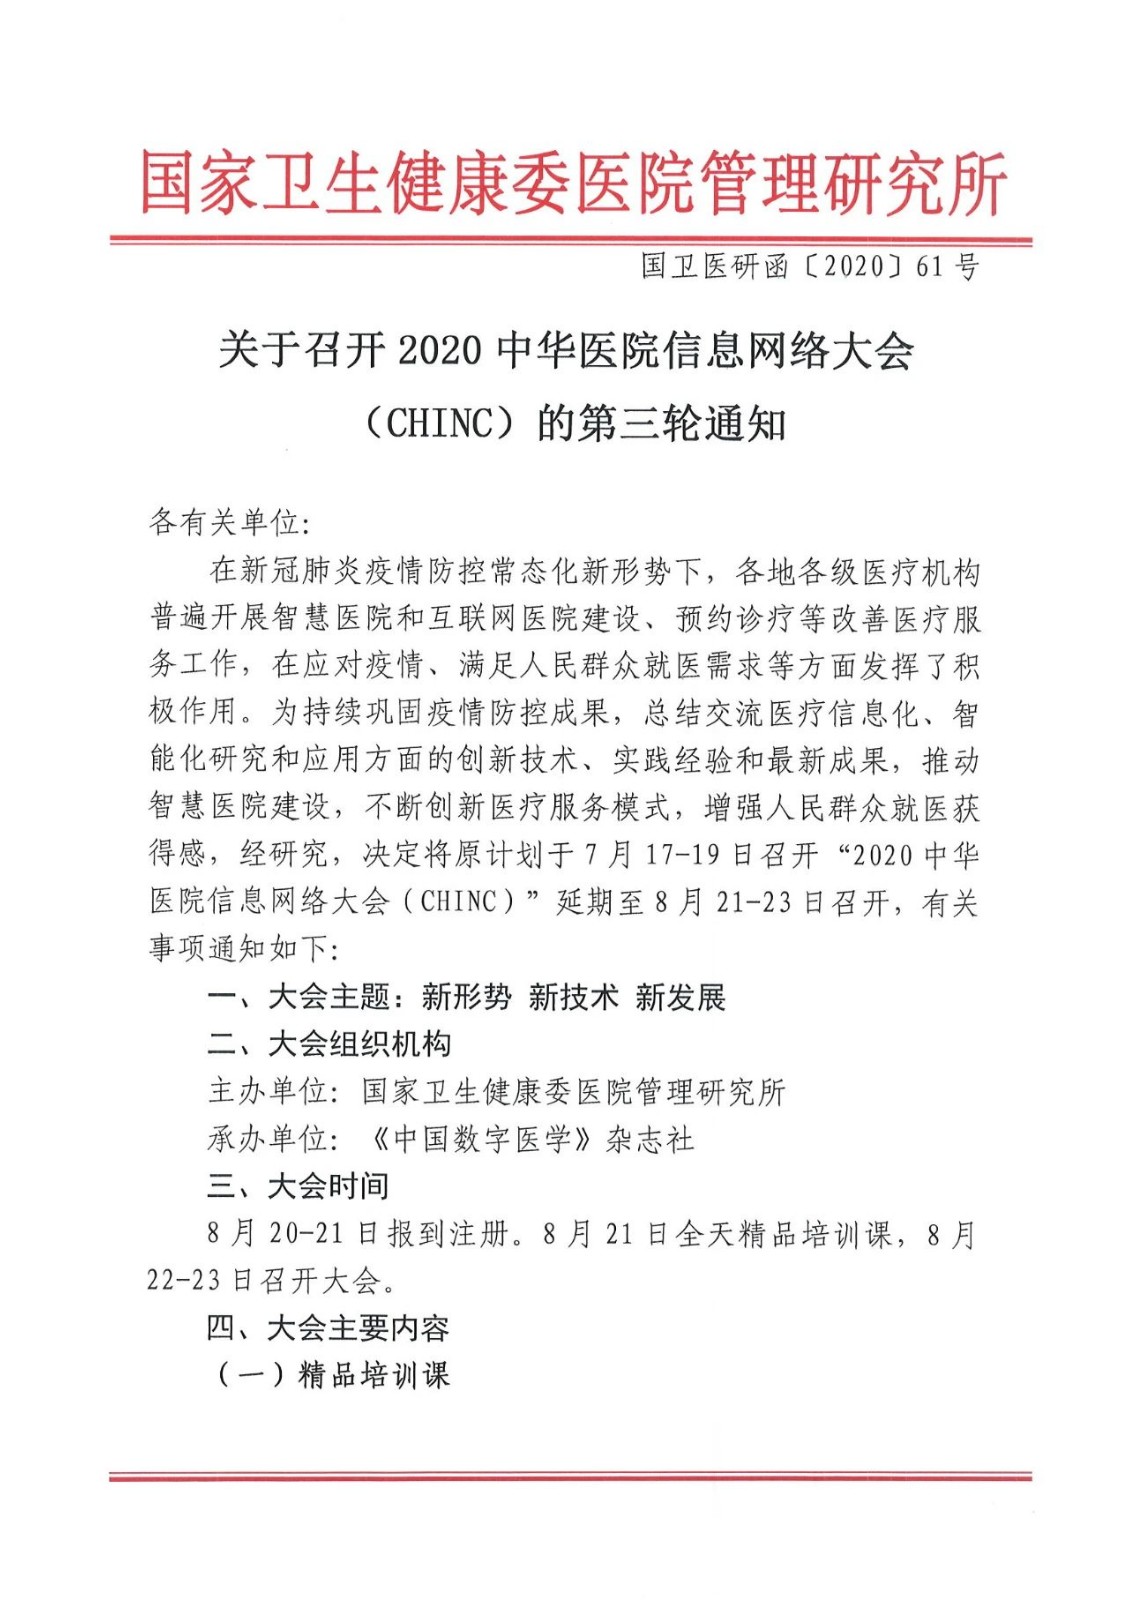 关于召开2020中华医院信息网络大会 （CHINC）的通知